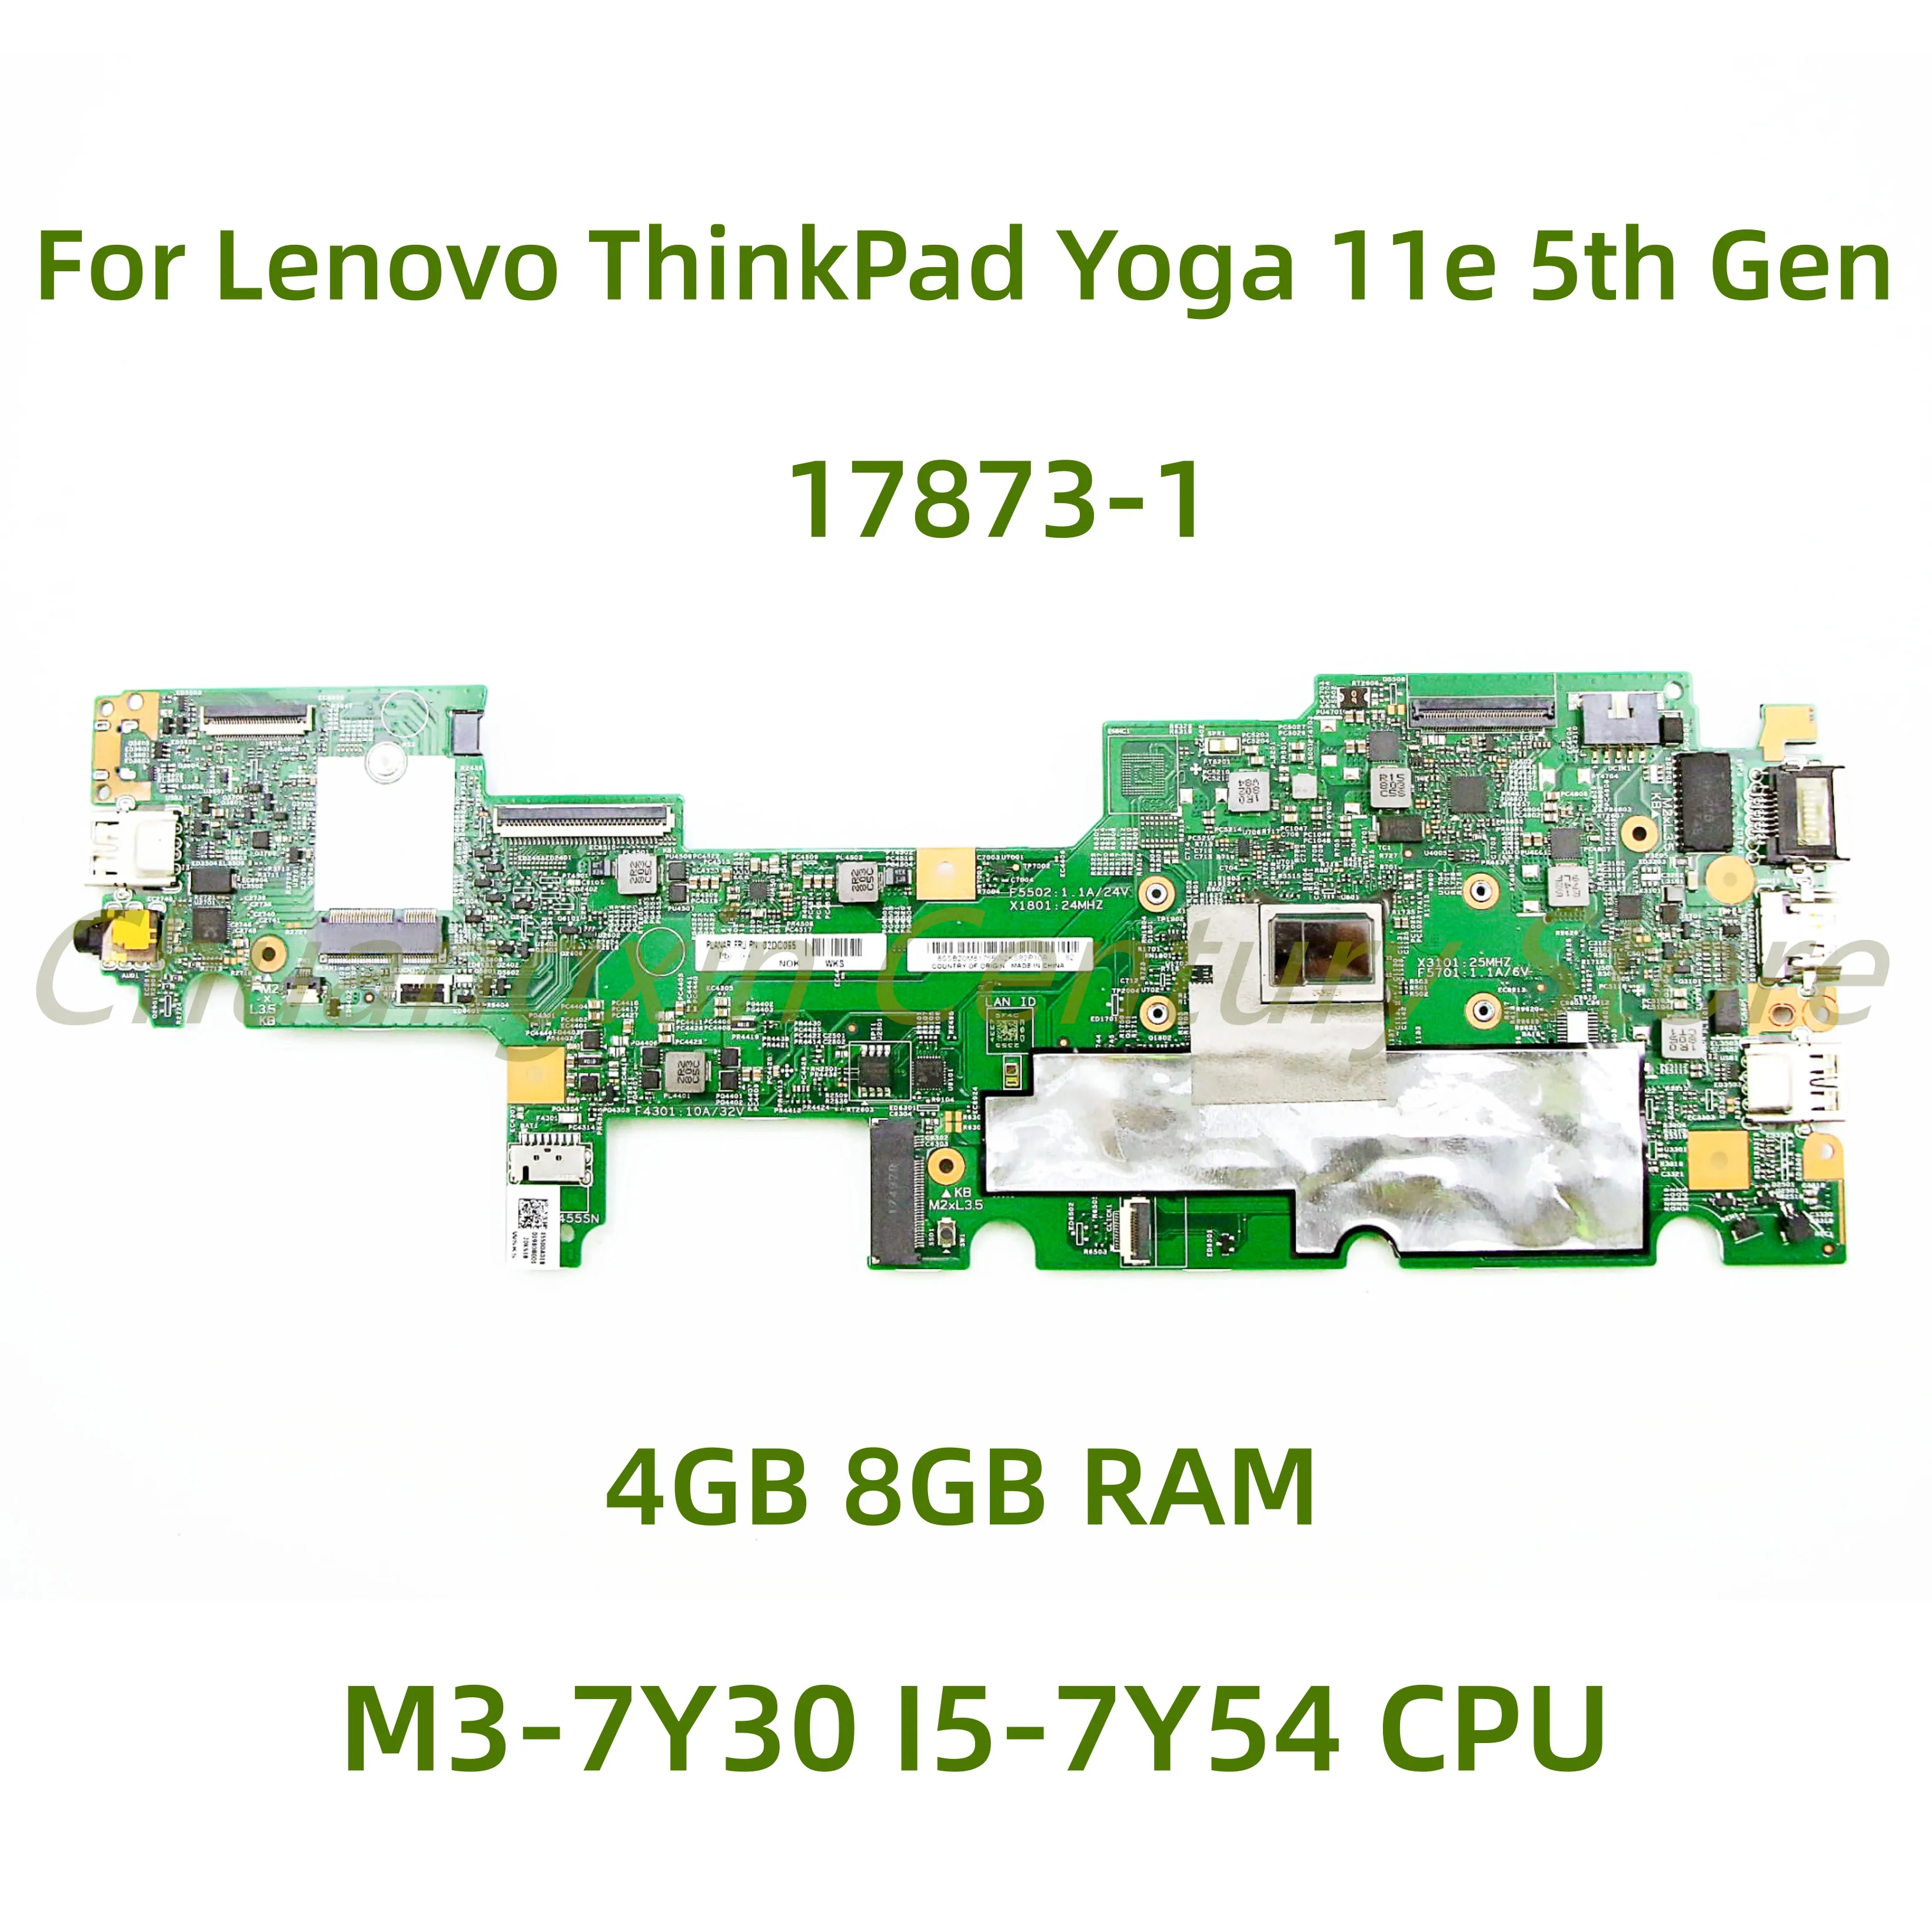 

Подходит для ноутбука Lenovo ThinkPad Yoga 11e 5-го поколения, материнская плата 17873-1 со стандартным зеркальным процессором, 4 ГБ 8 ГБ ОЗУ, полностью протестирована на 100%